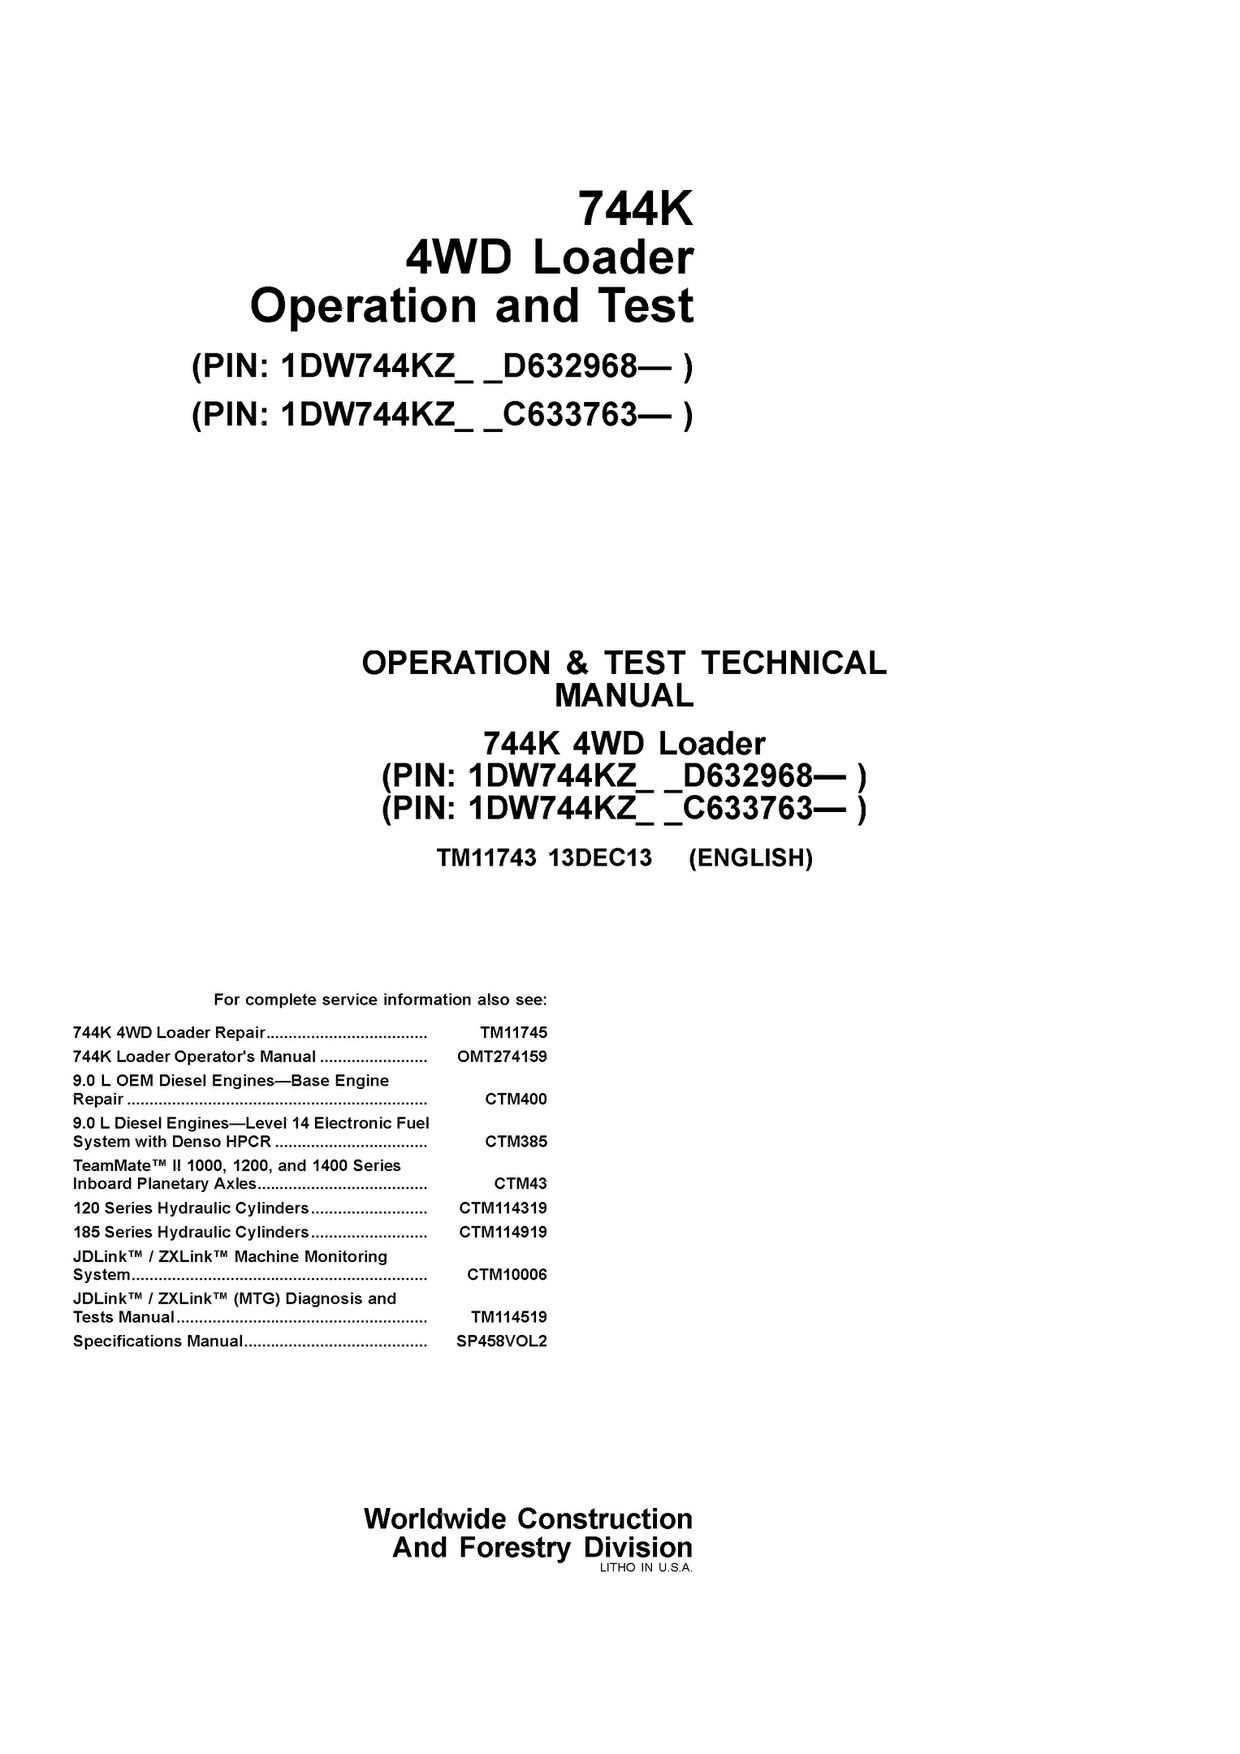 John Deere Technical Manual Download